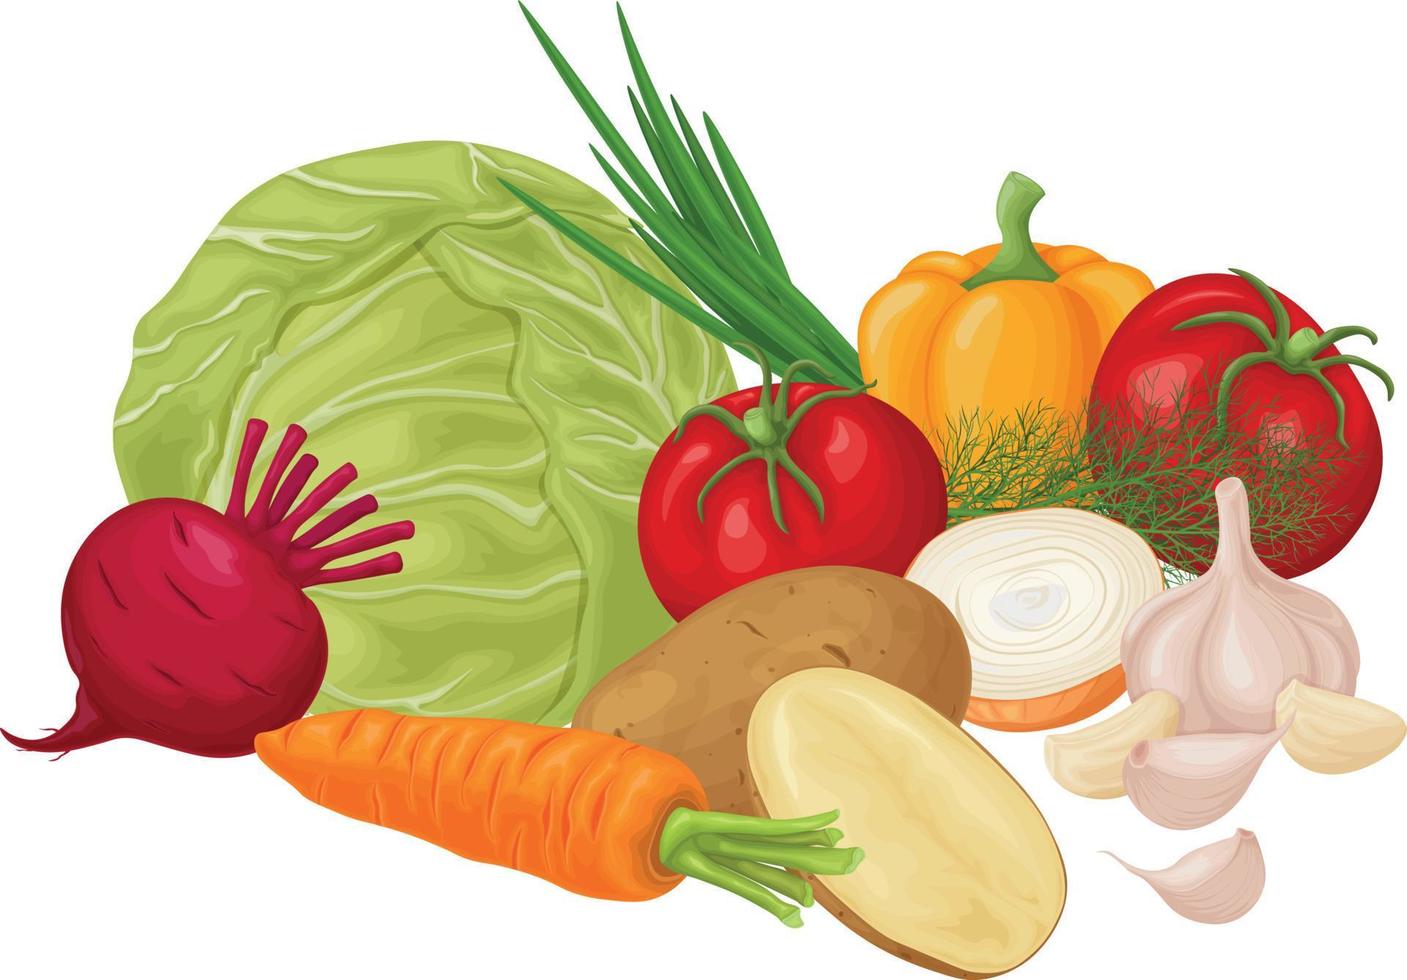 Gemüse. Bild von Gemüse wie Kohltomaten, Zwiebeln, Knoblauch und Kartoffeln sowie Karotten mit Rüben. reifes Gemüse aus dem Garten. Vegetarische Vitaminprodukte. Vektor. vektor